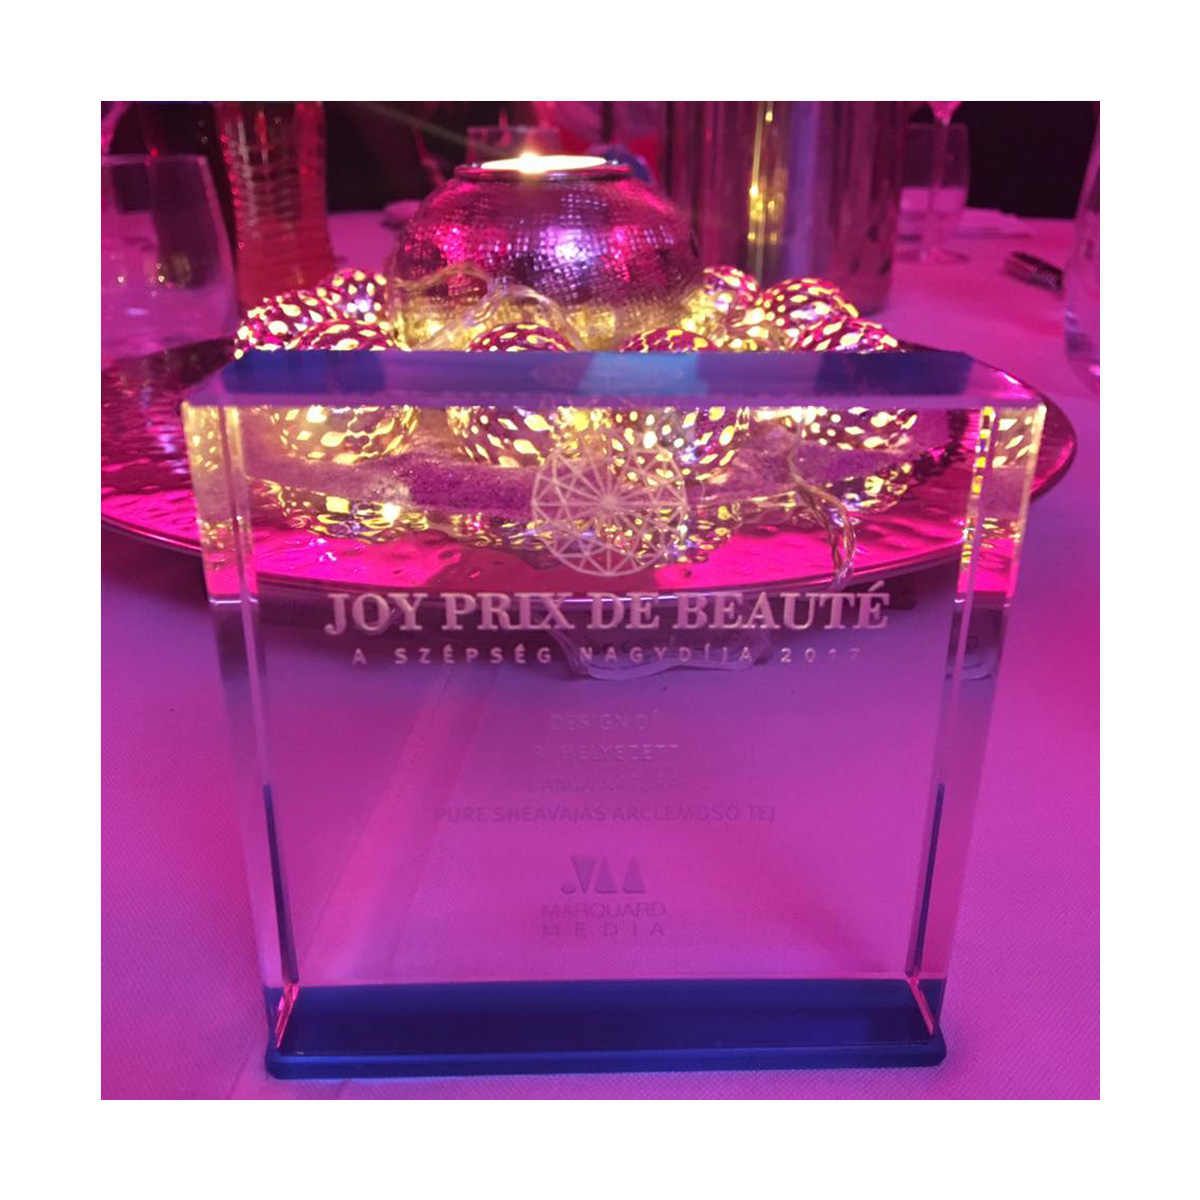 Joy Prix de Beauté - termék tervezés díj